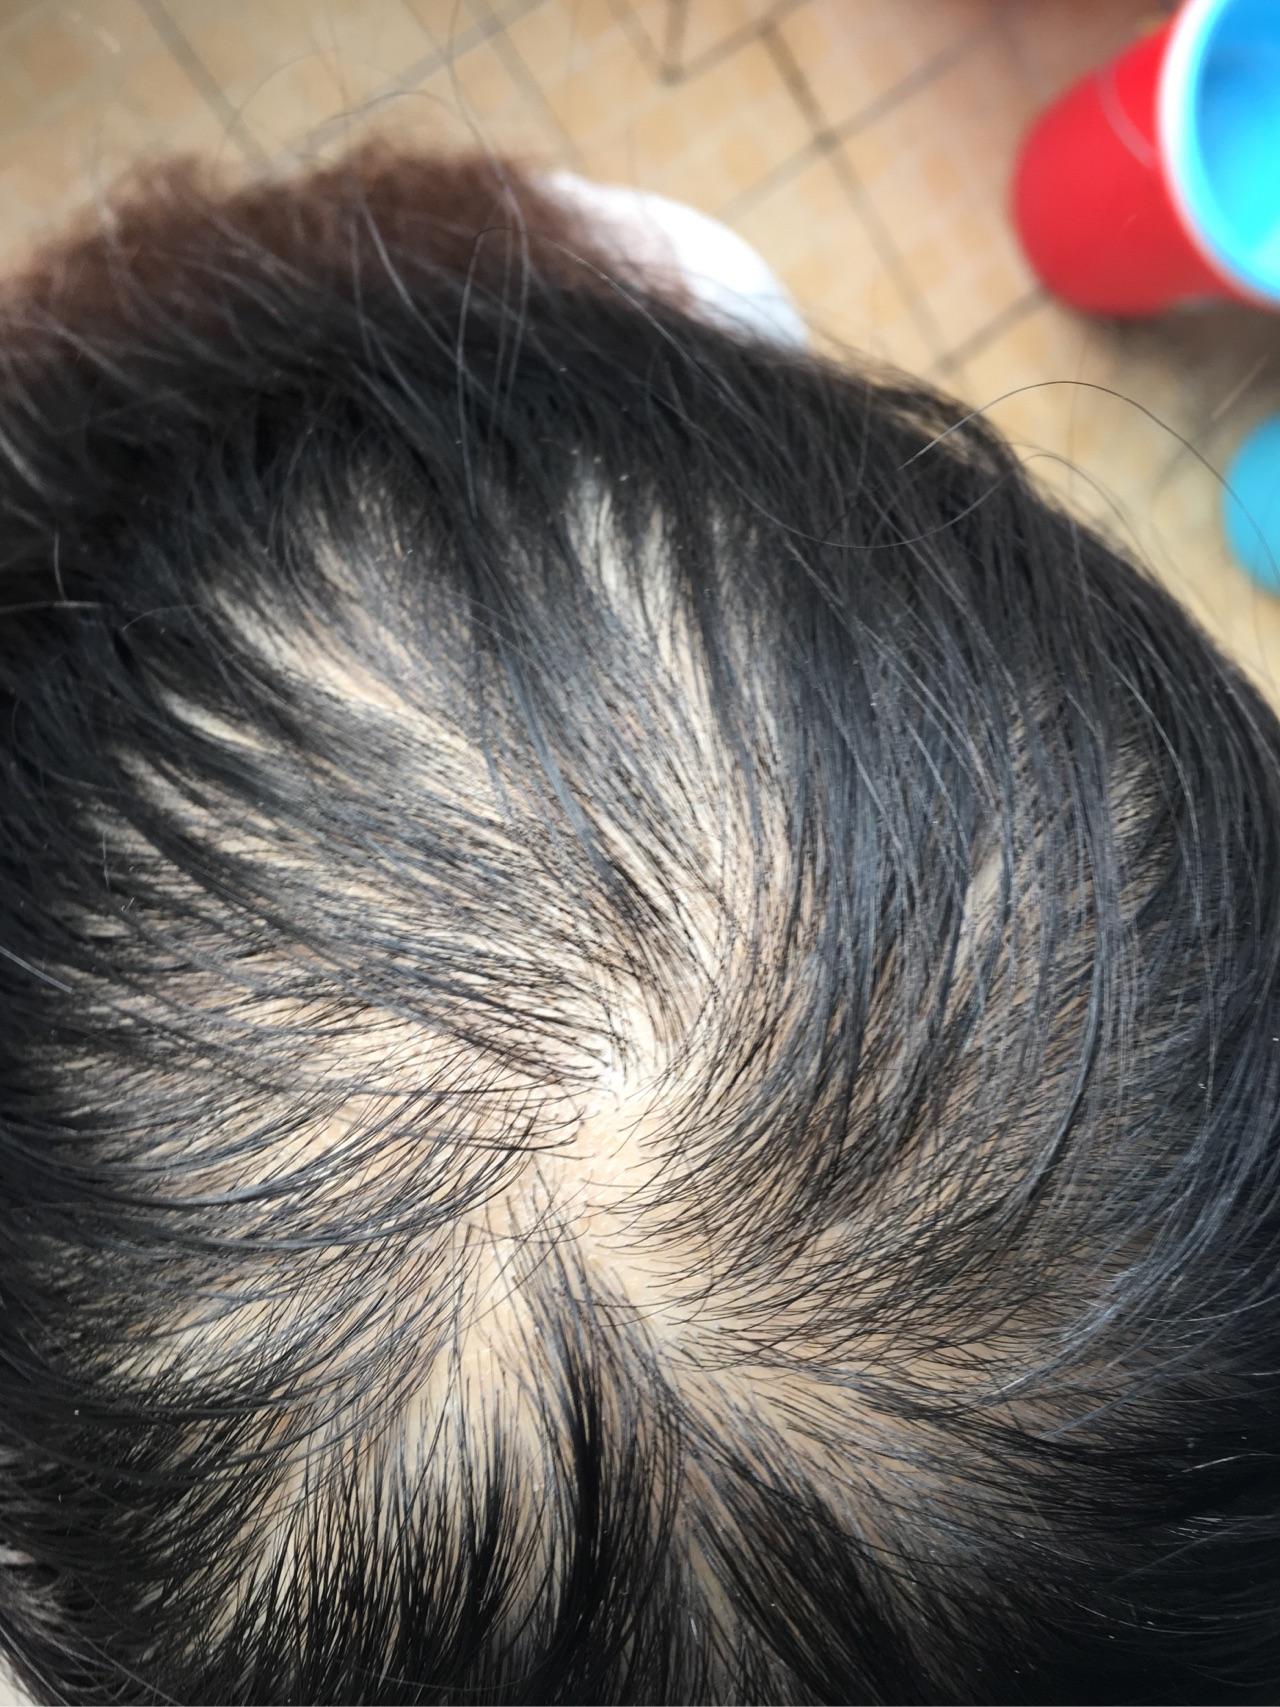 女生22,三年前发现头发越来越少,头发细软少,医院医生说是脂溢性脱发